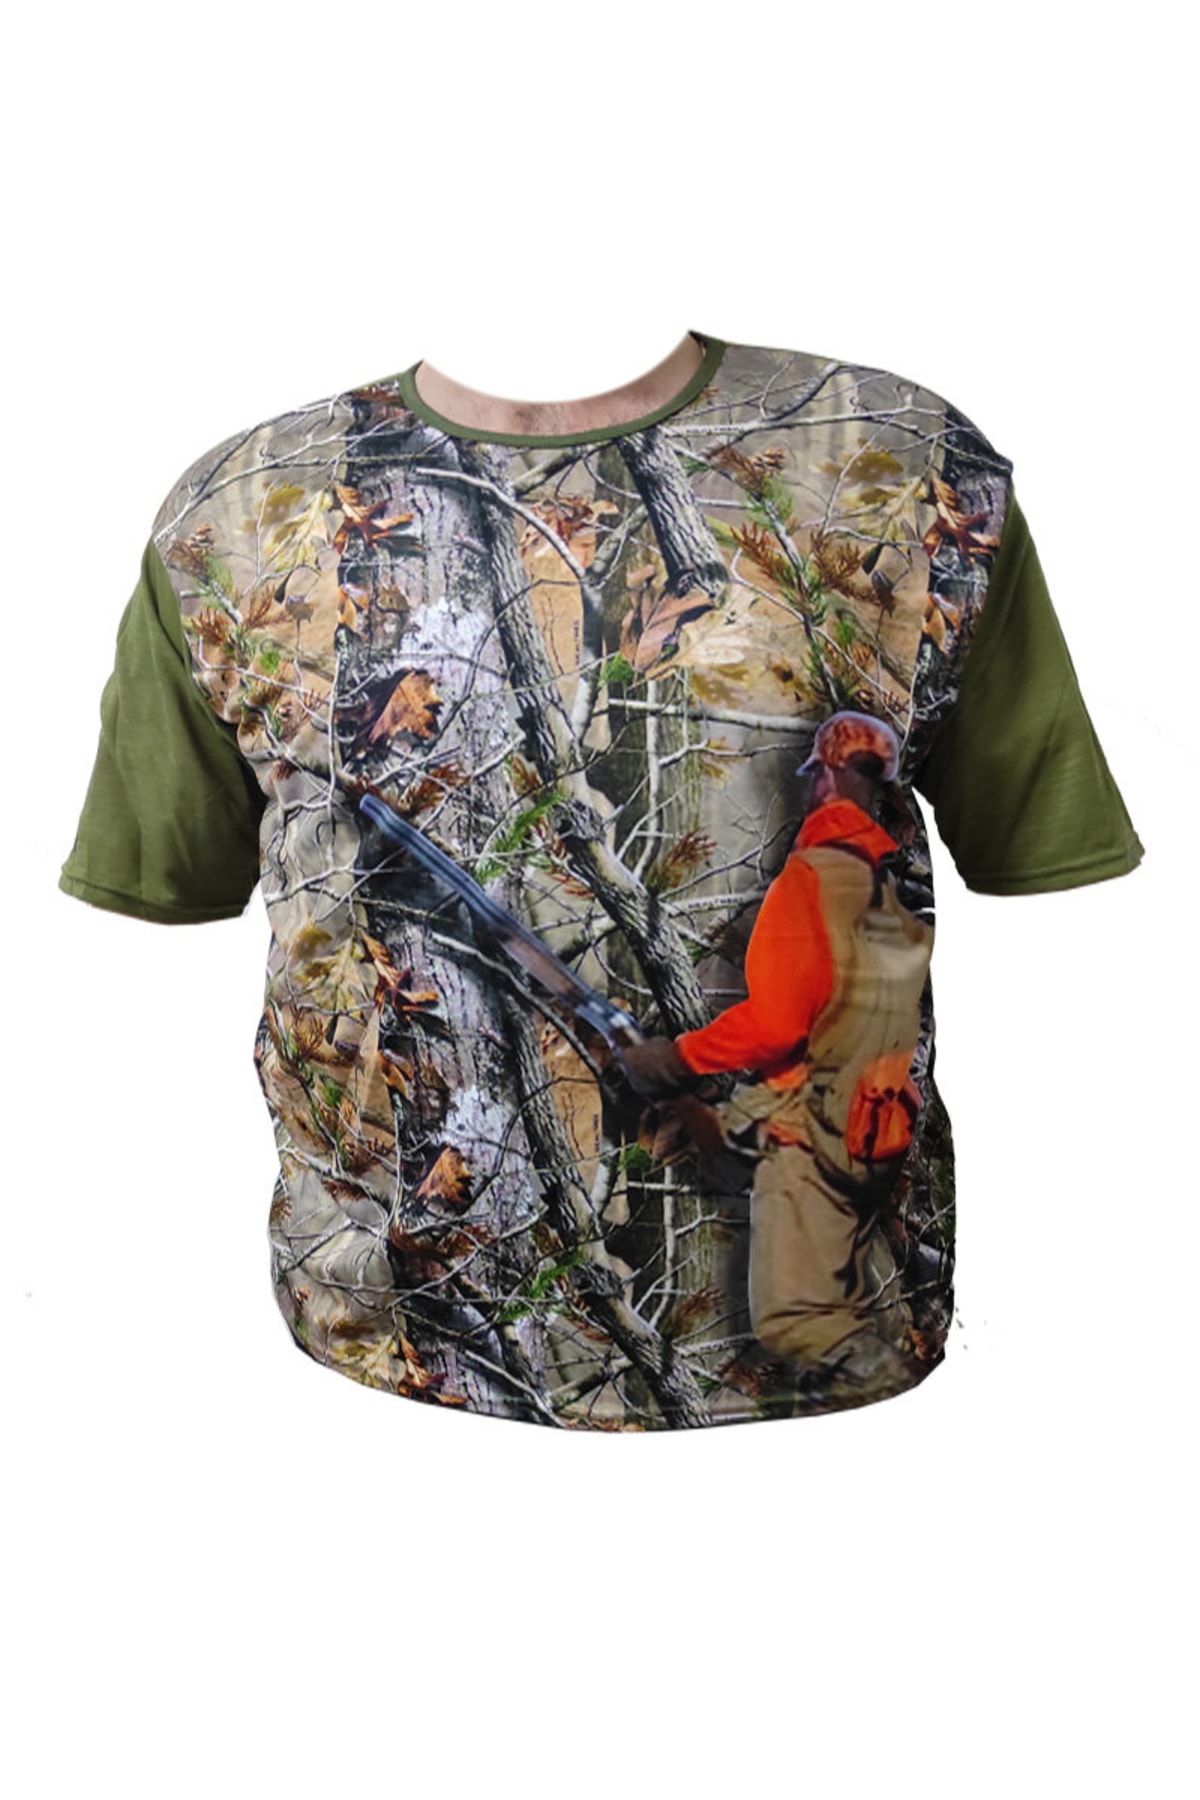 ALDOS Kısa Kol Meşe Desenli Tüfekli Avcı Ve Outdoor T-shirt